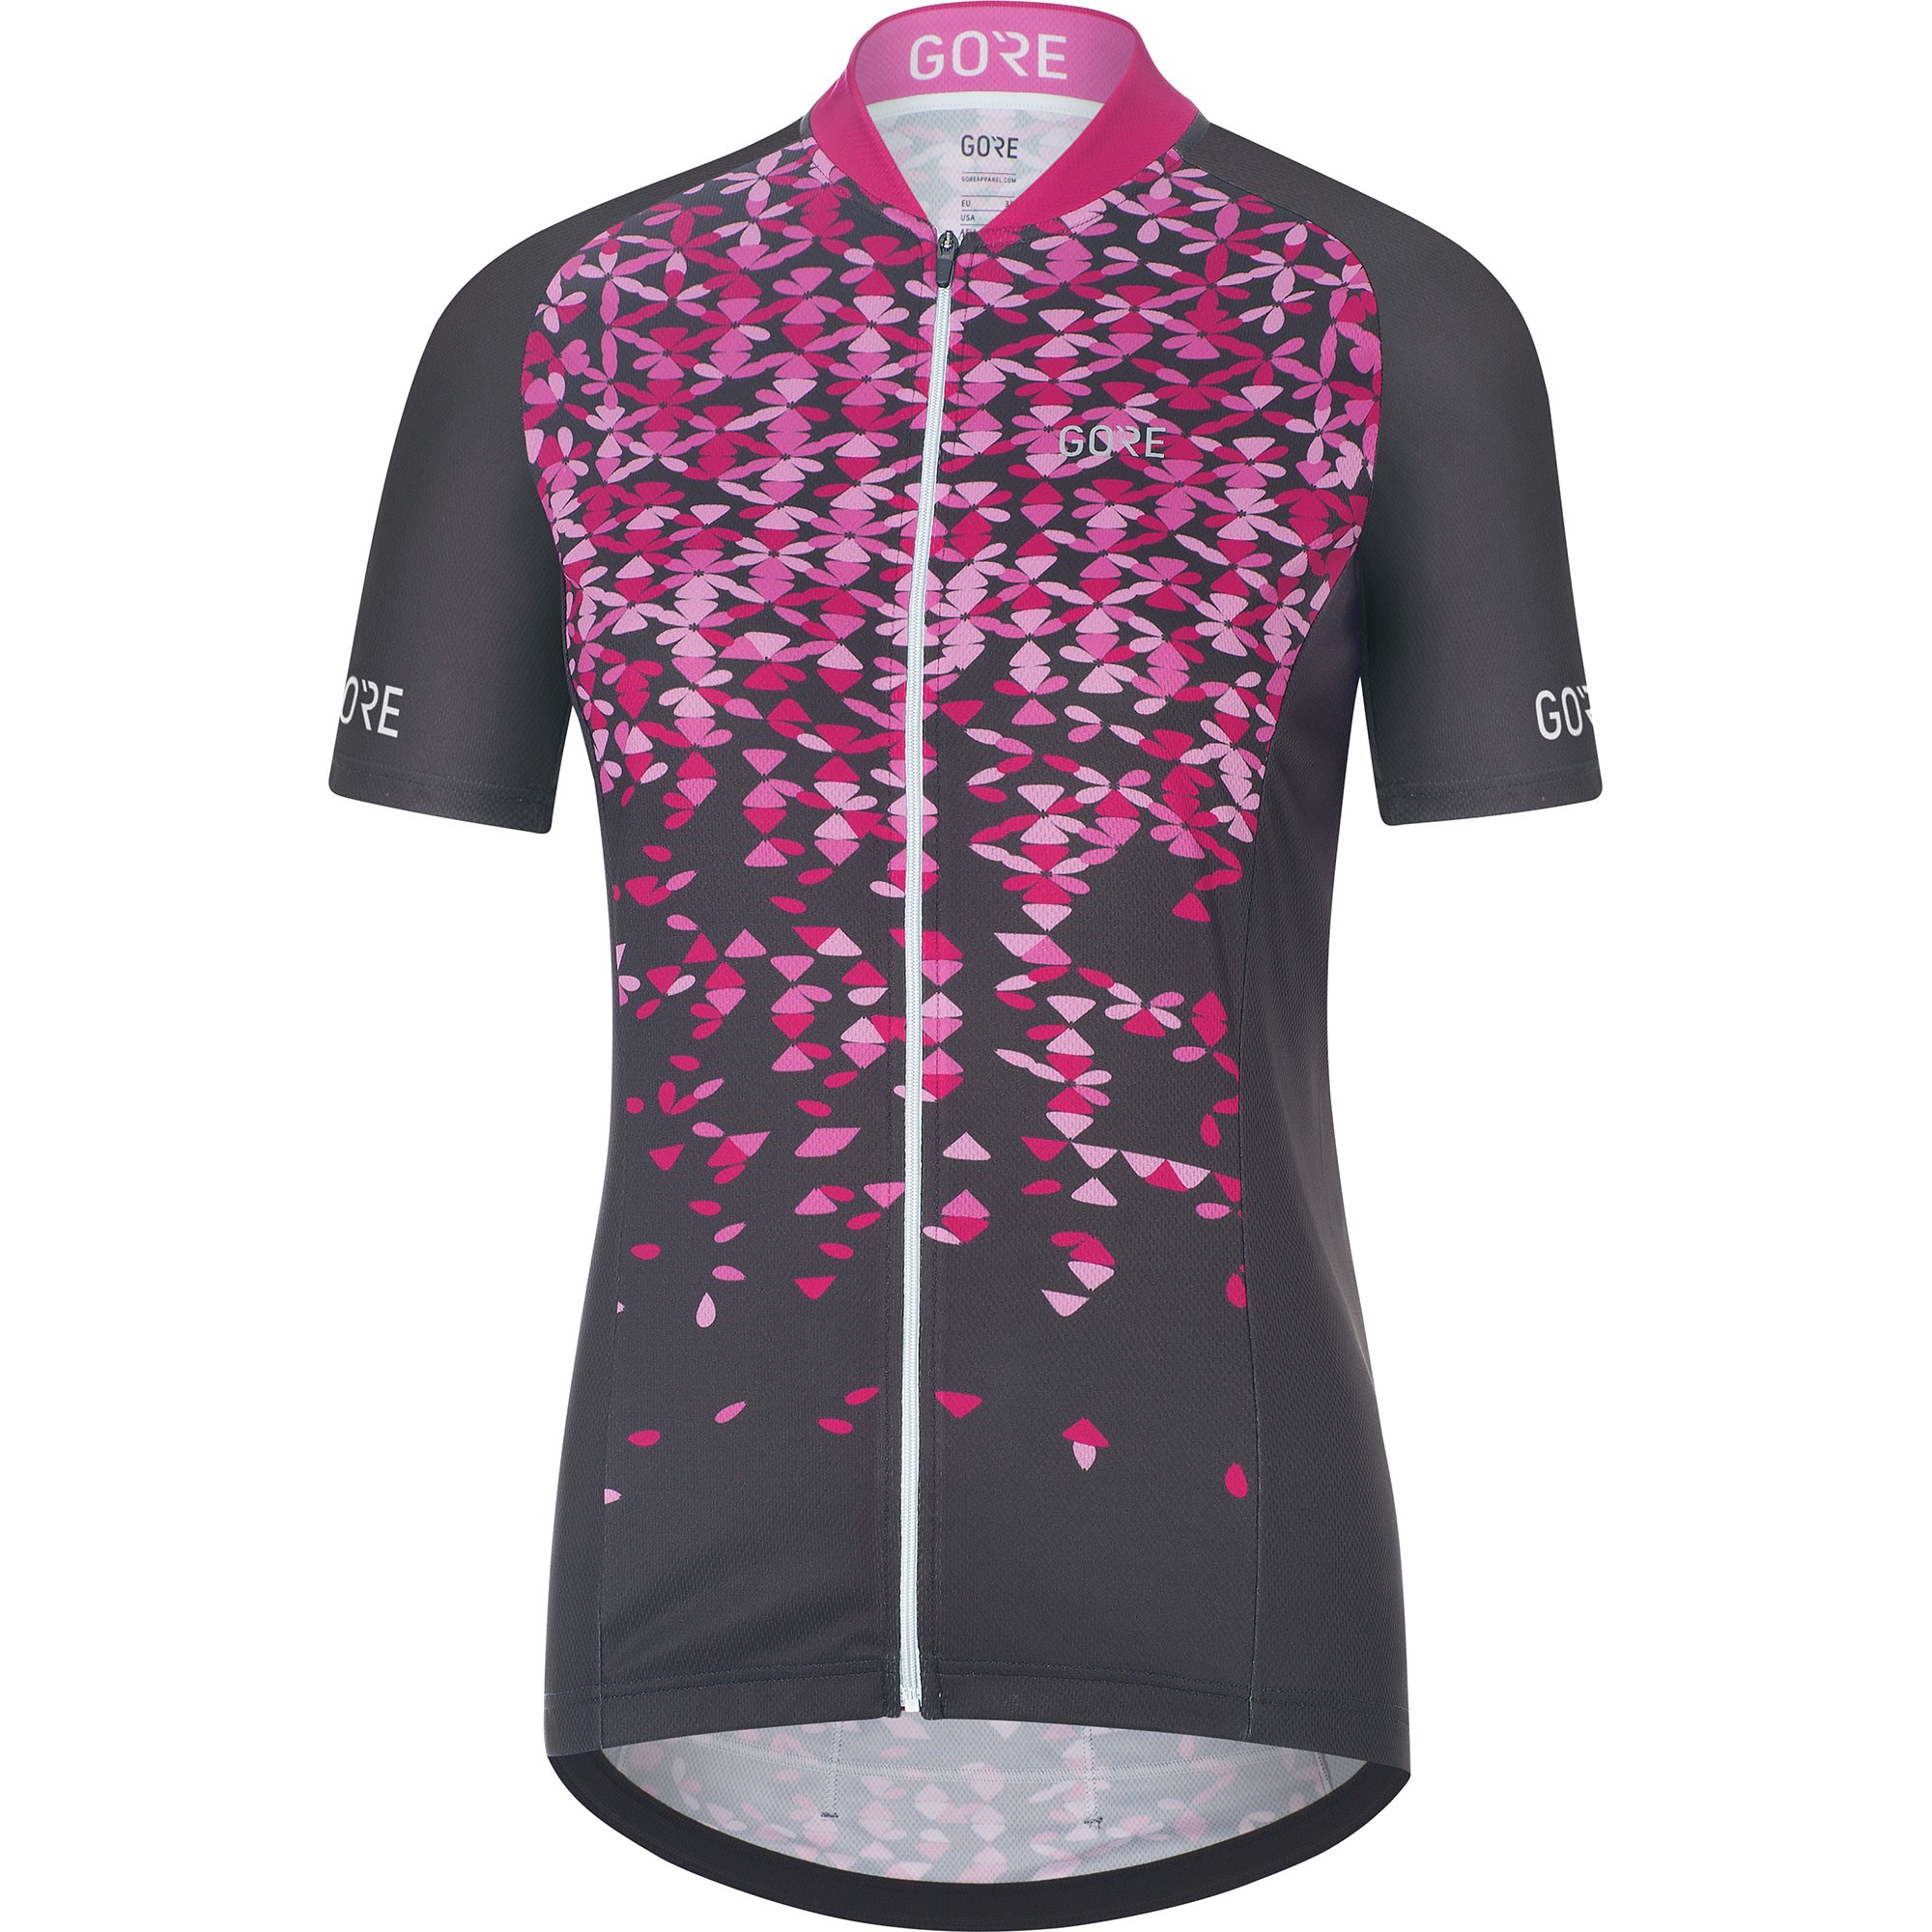 Gore C3 petals maillot de cyclisme manches courtes femme marron raspberry rose